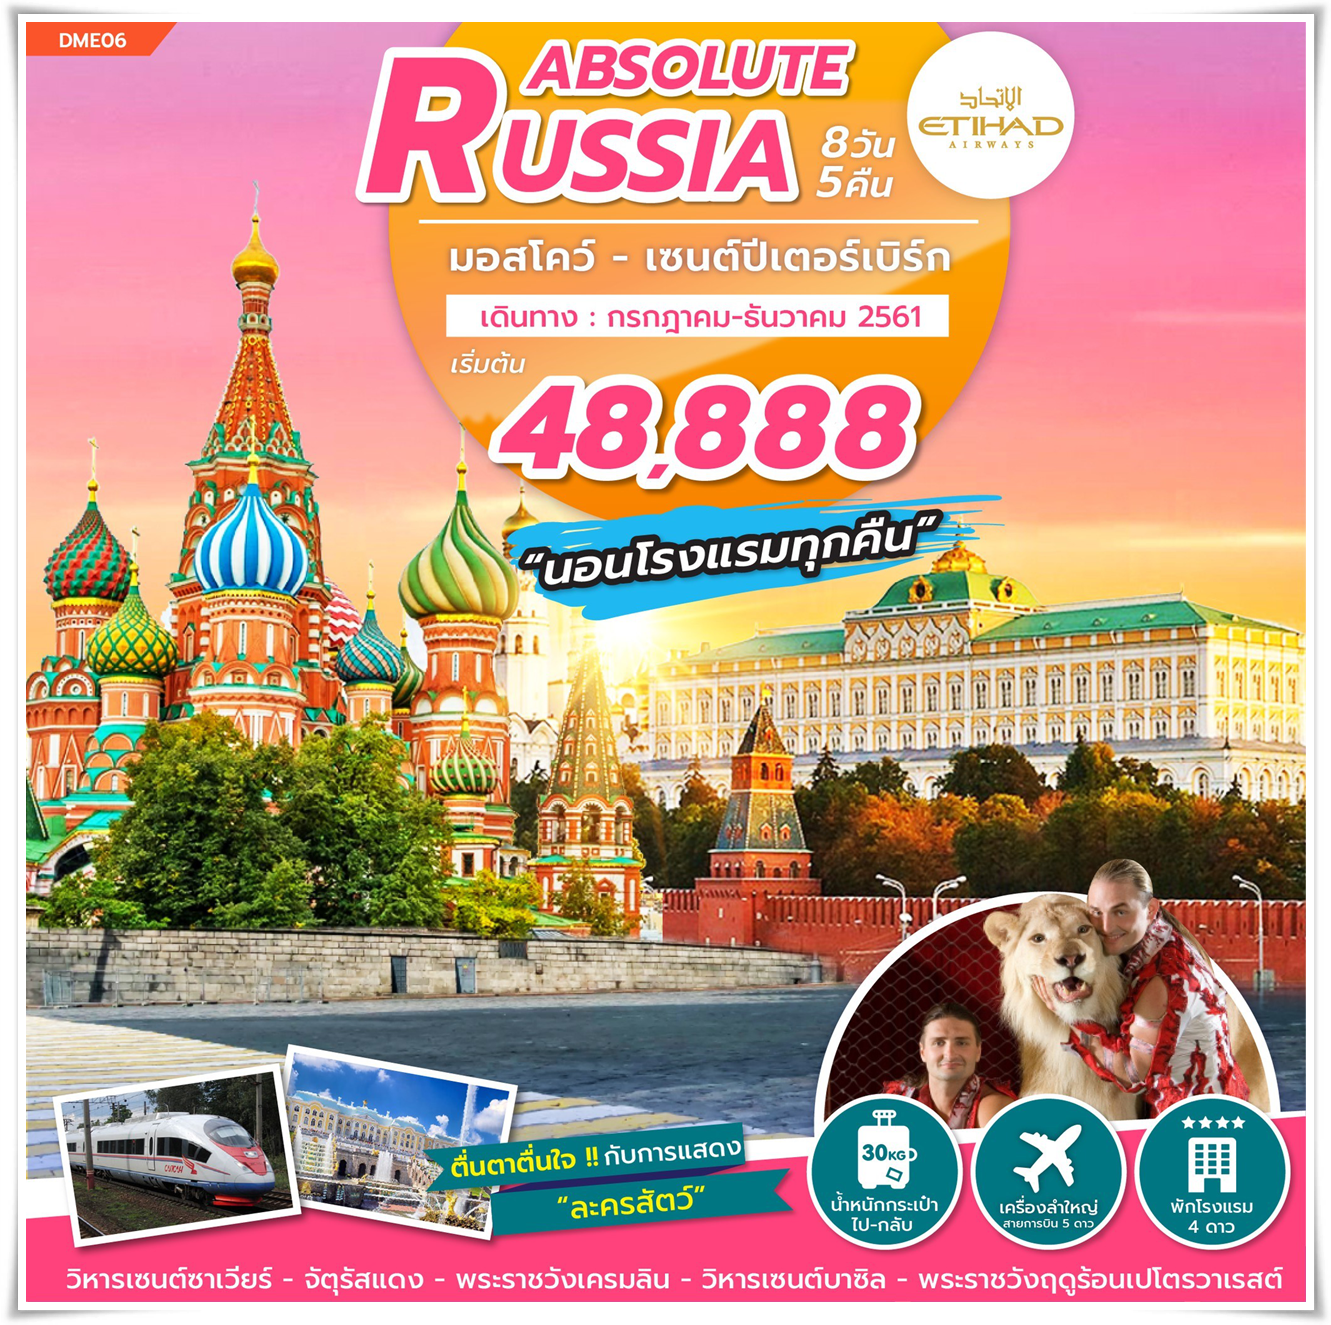 ทัวร์รัสเซีย ABSOLUTE RUSSIA (MOS-SAINT) 8วัน 5คืน (NOV-DEC18) DME06